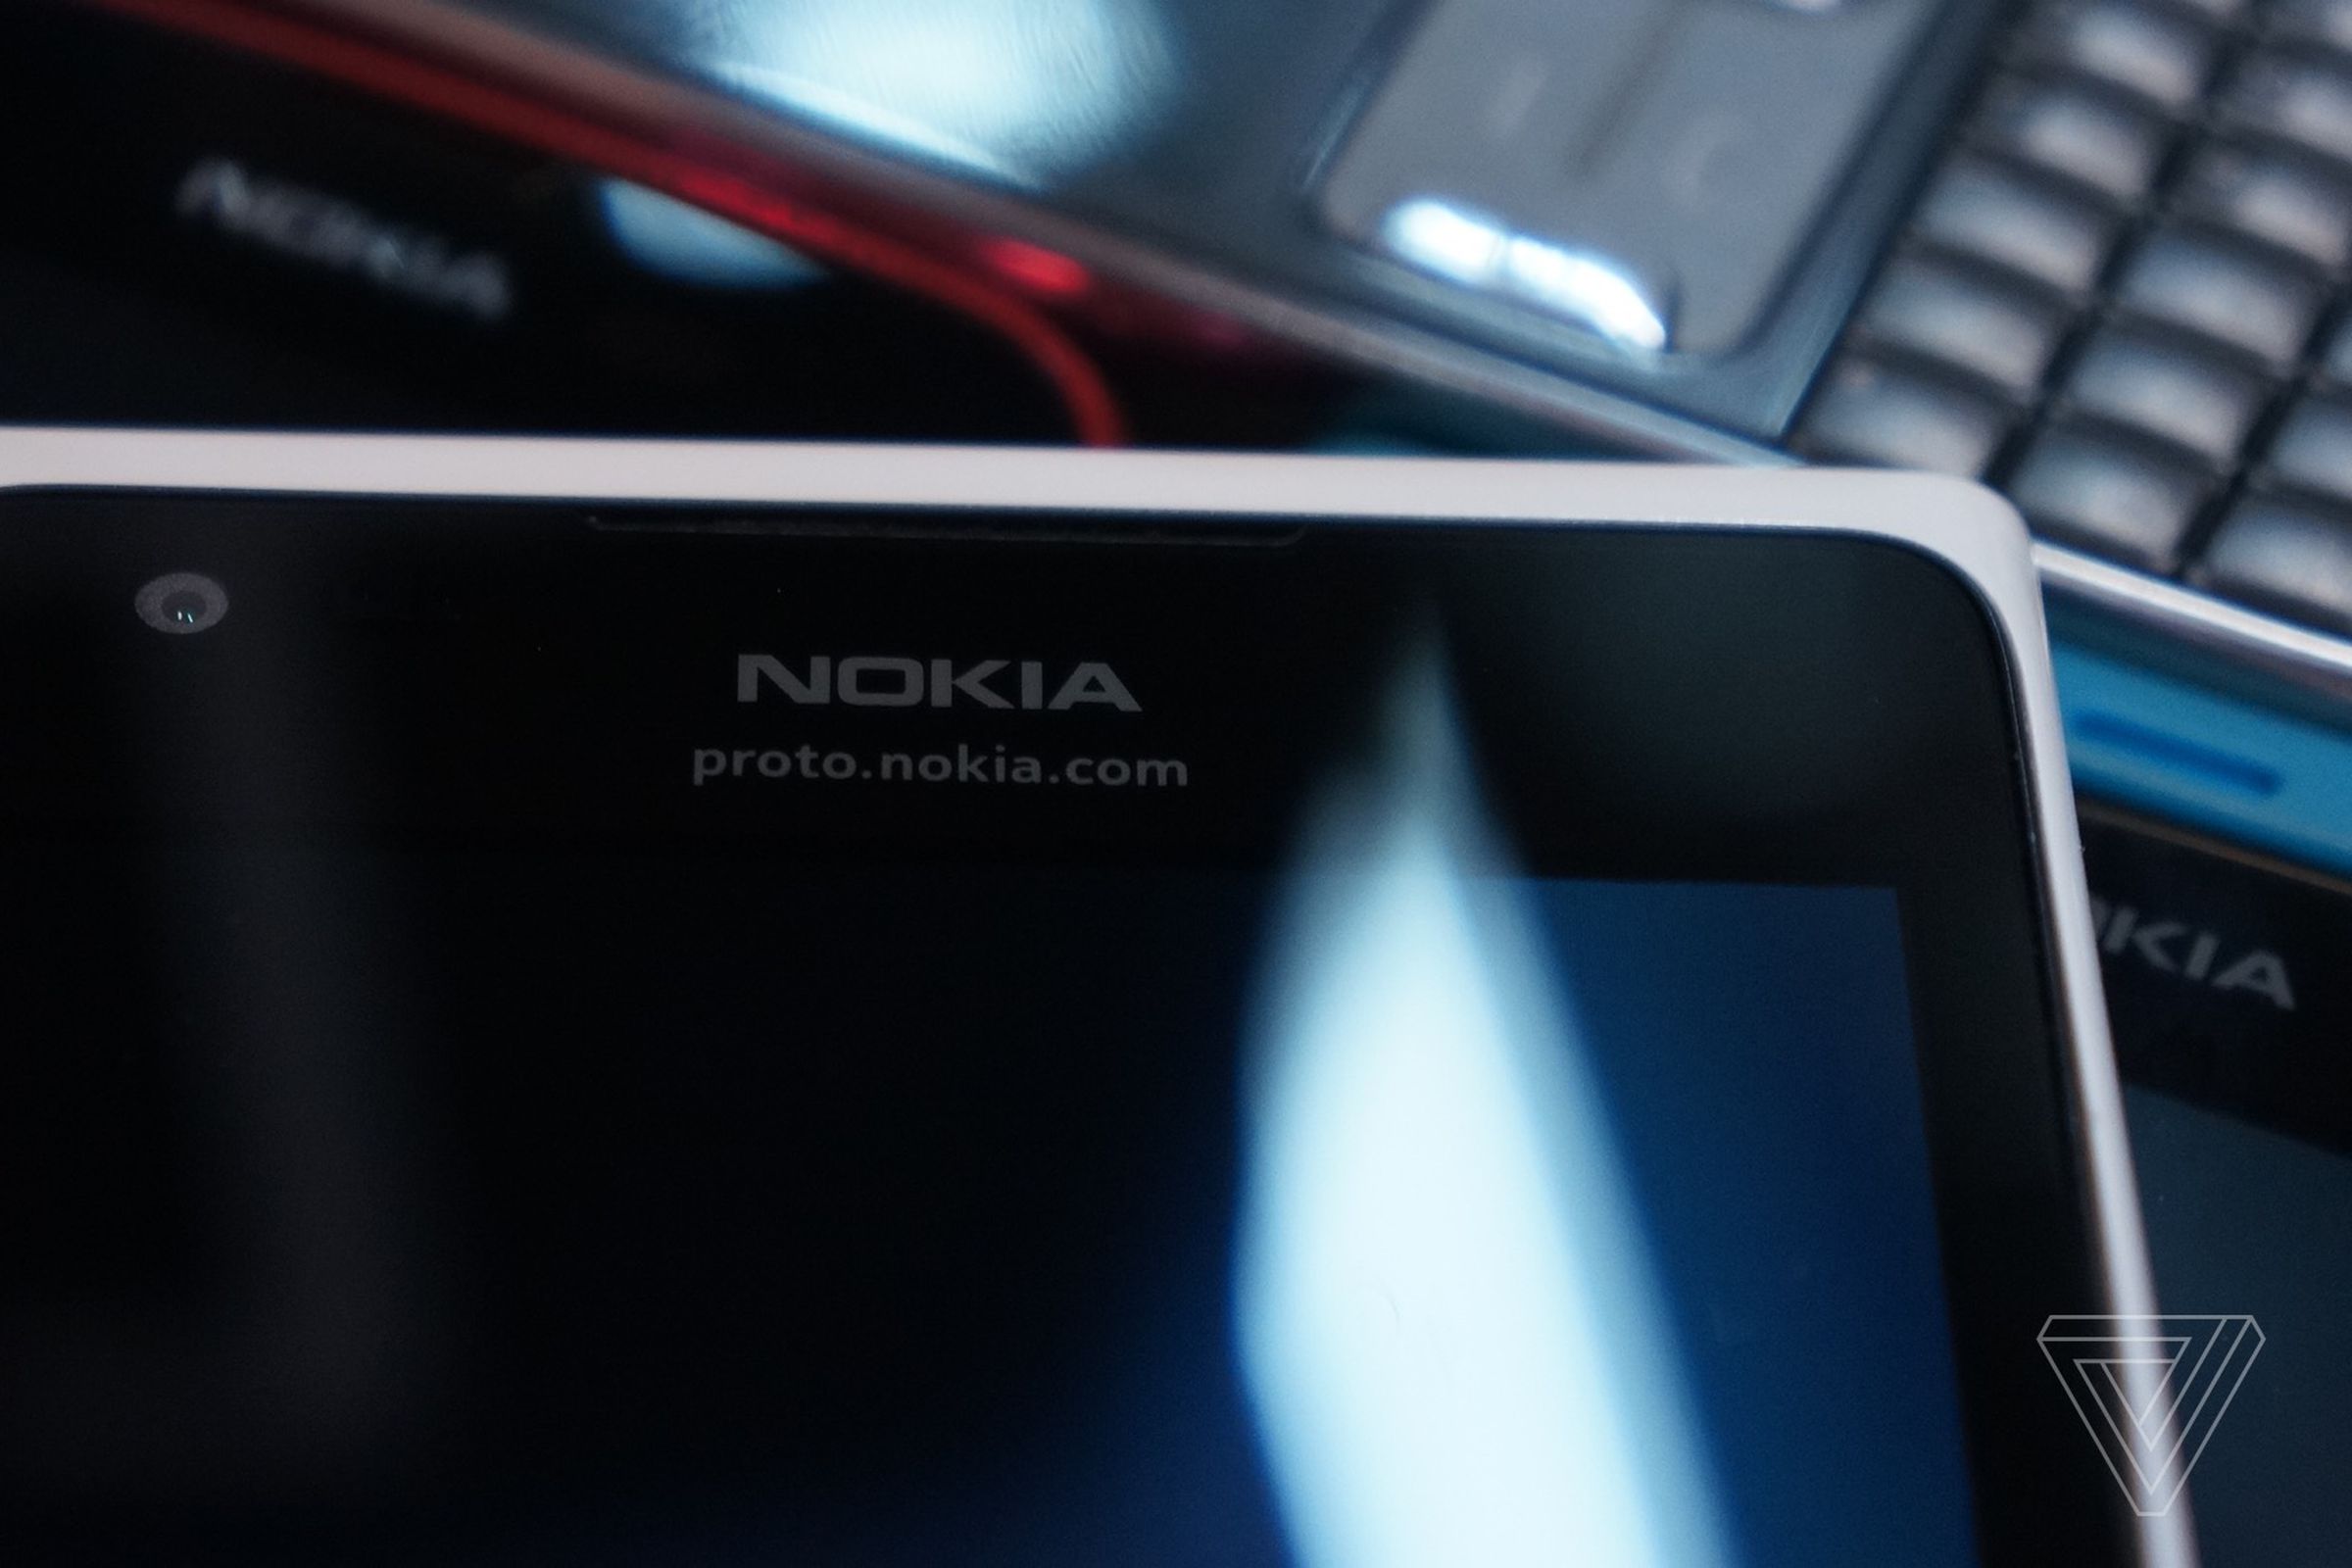 Nokia prototypes